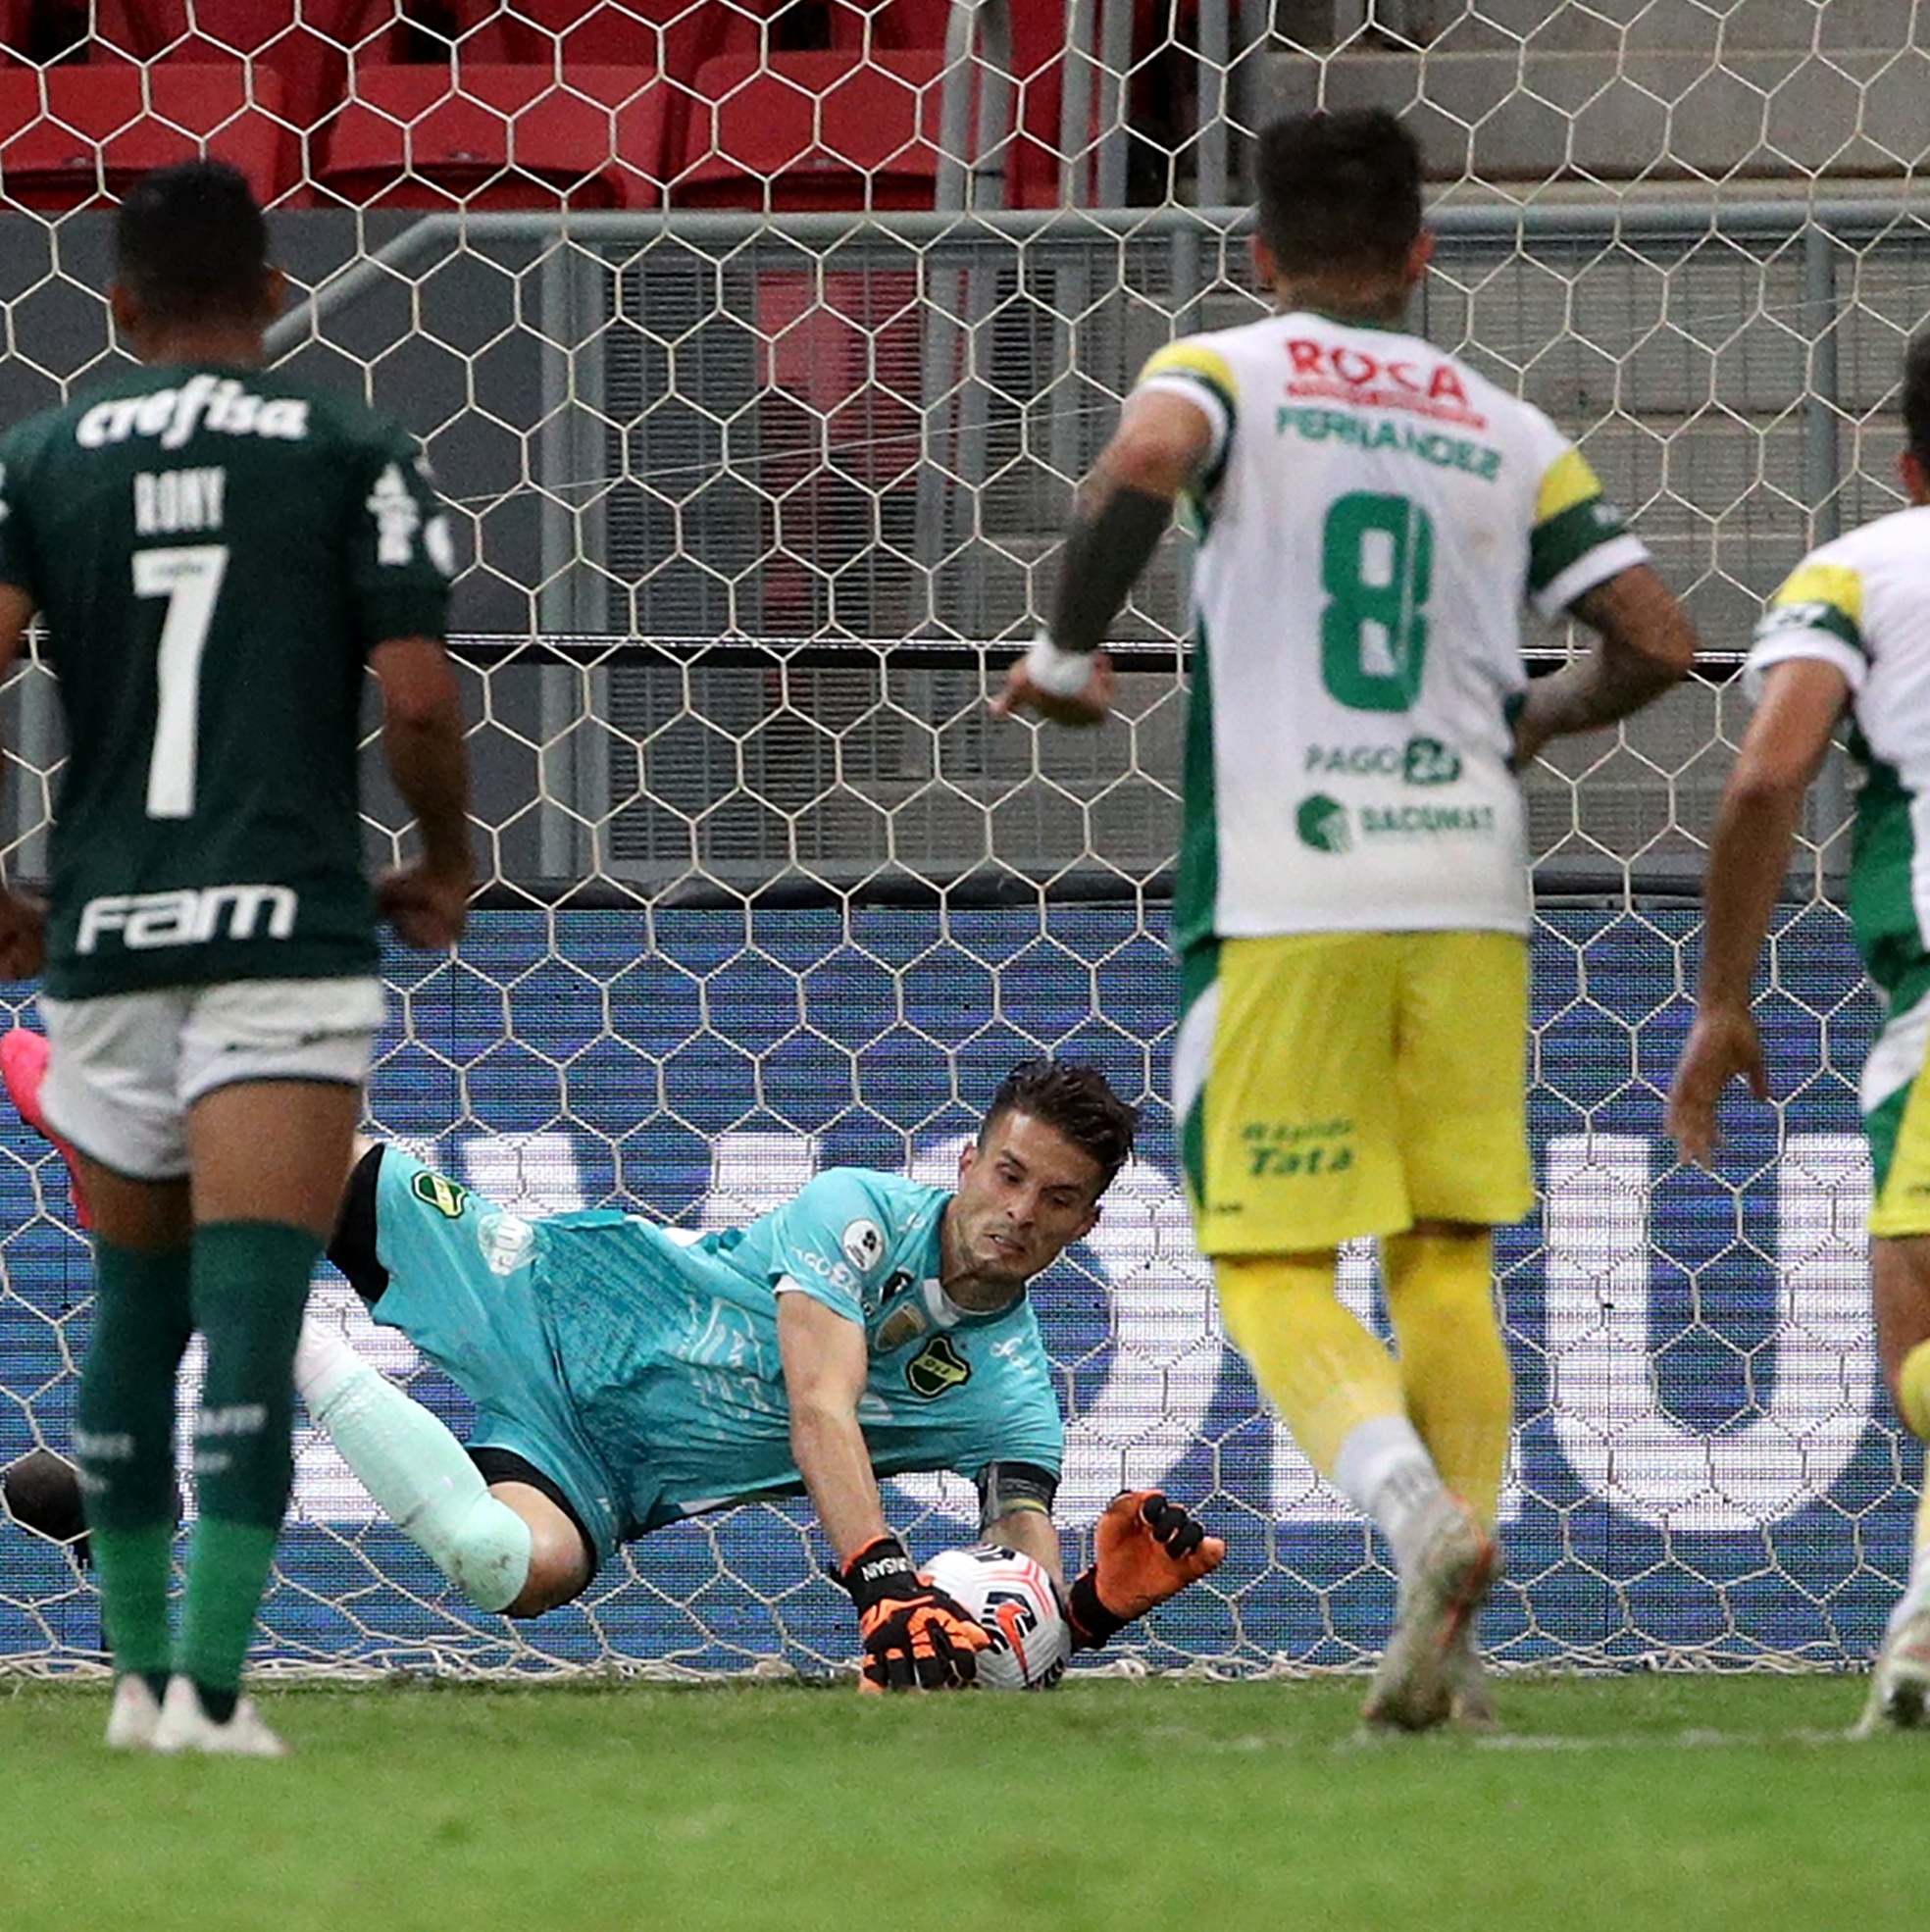 Depois de boa campanha Palmeiras perde Brasileirão nos pênaltis